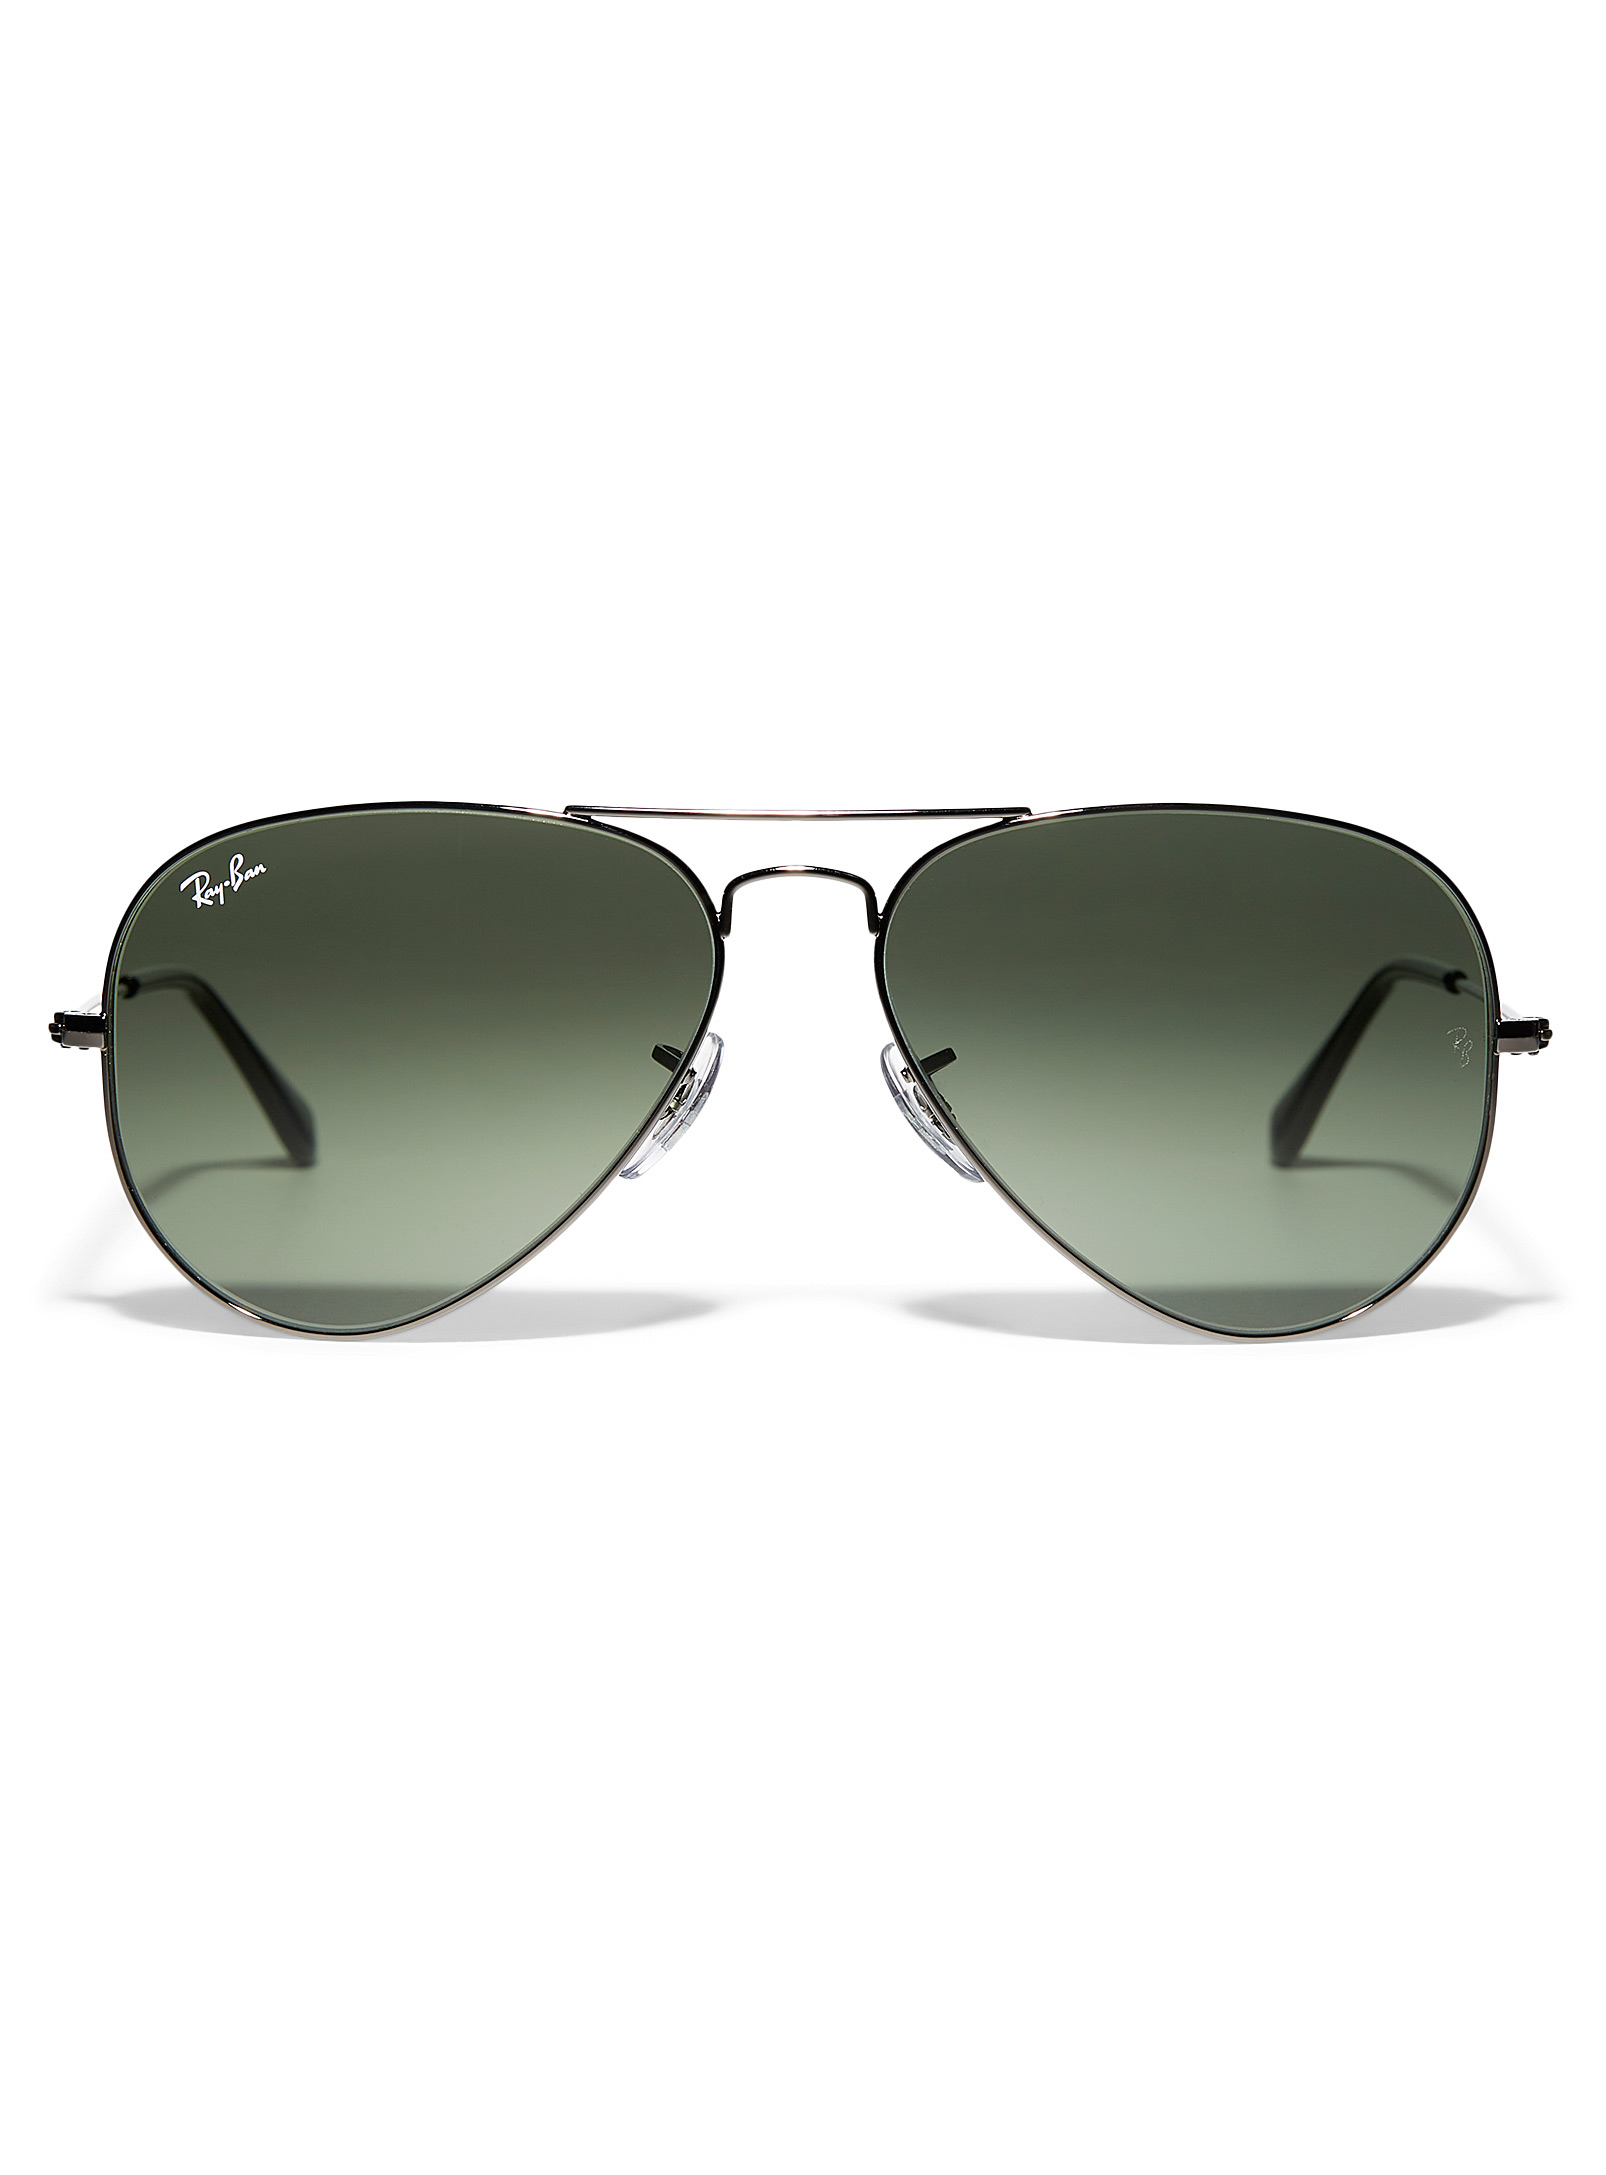 Ray-Ban - Les lunettes de soleil aviateur Evolve